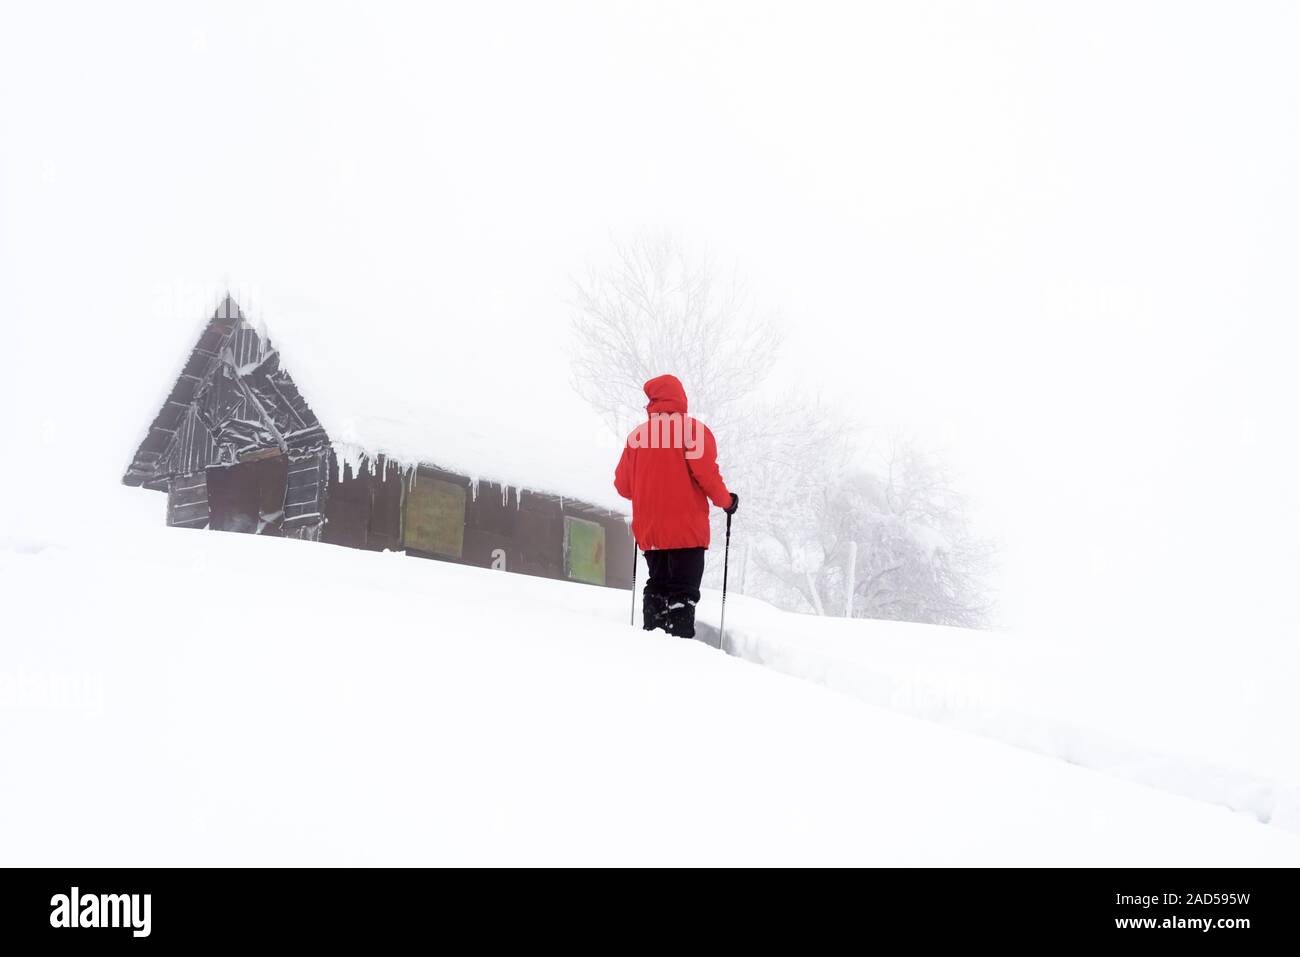 Paisaje invernal minimalista con casa de madera y turista en montañas nevadas. Weater nublado, fotografía paisajística Foto de stock